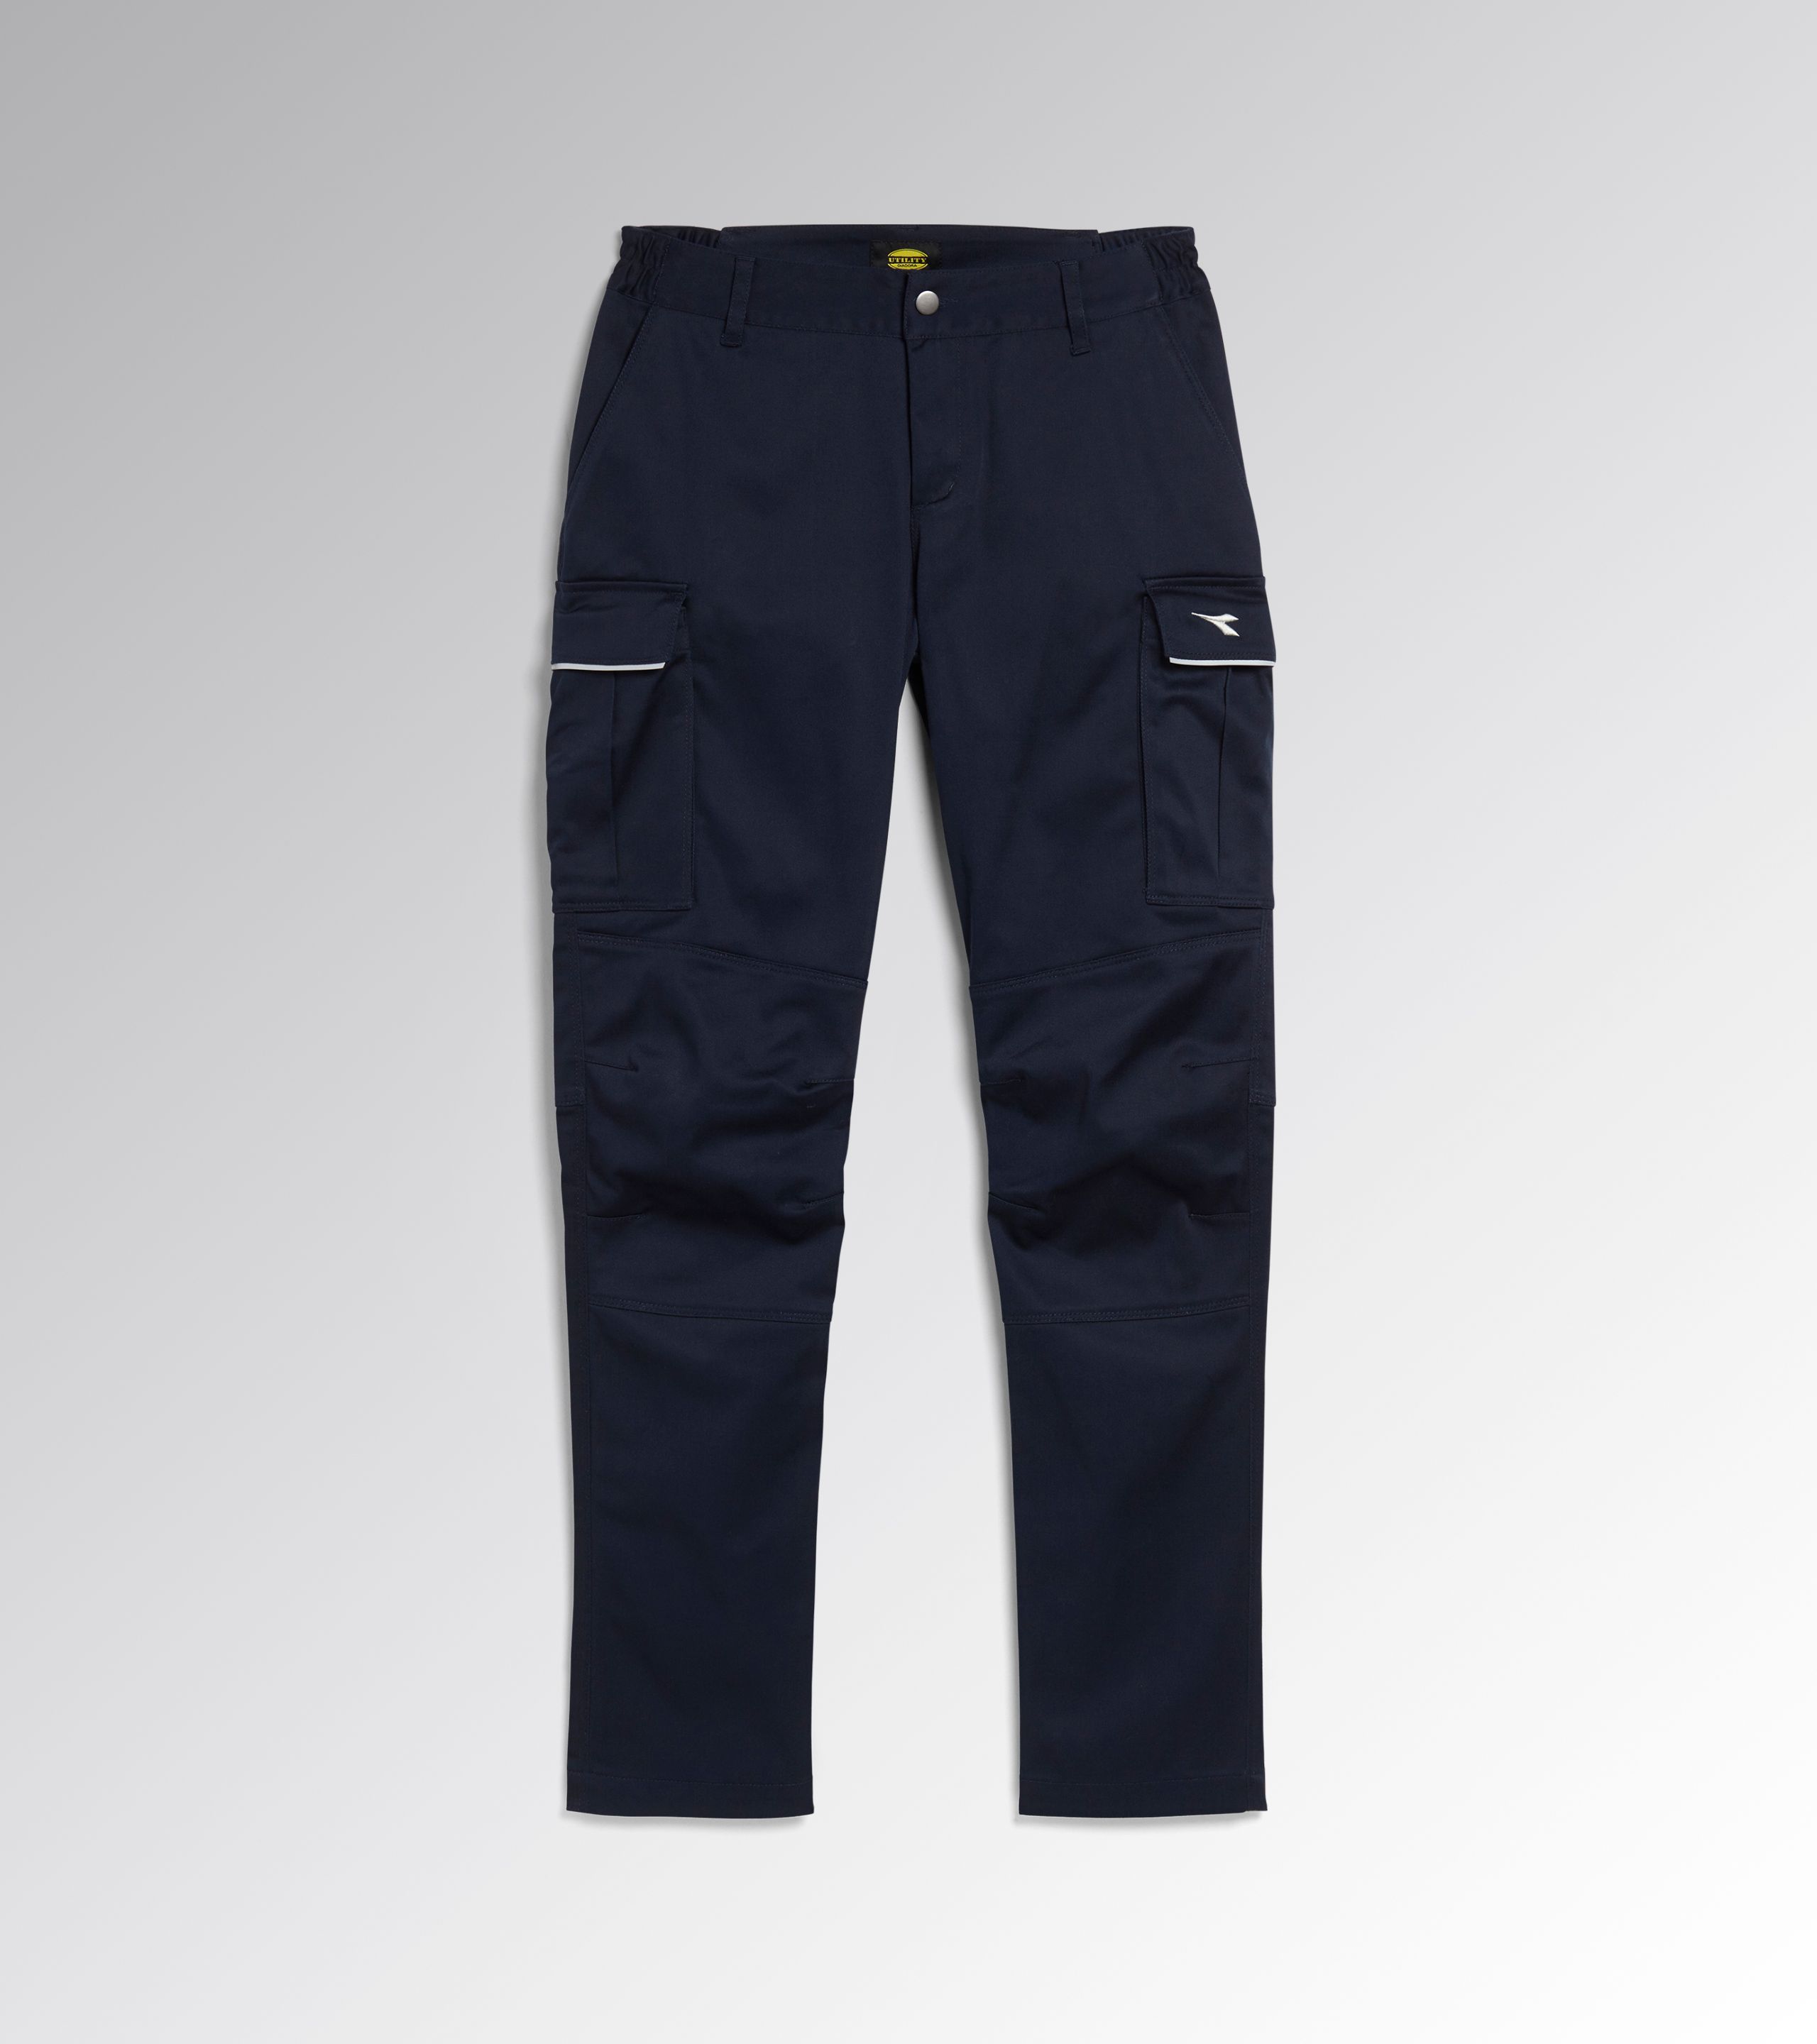 Work trousers Diadora Utility Pant Level Cargo